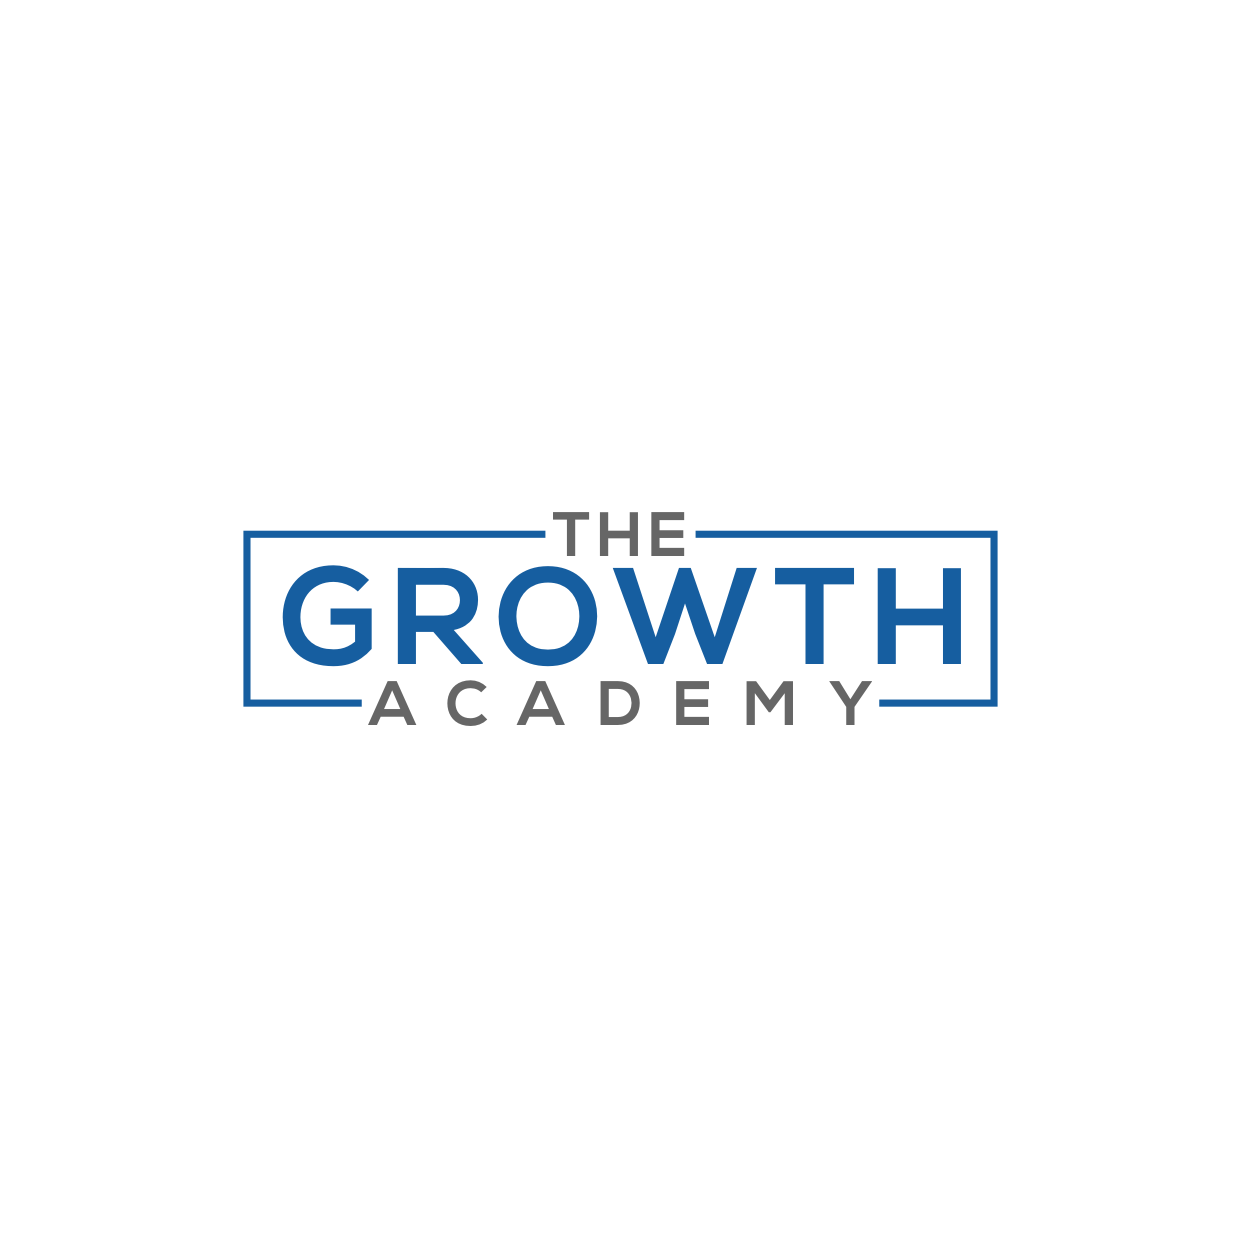 The Growth Academy